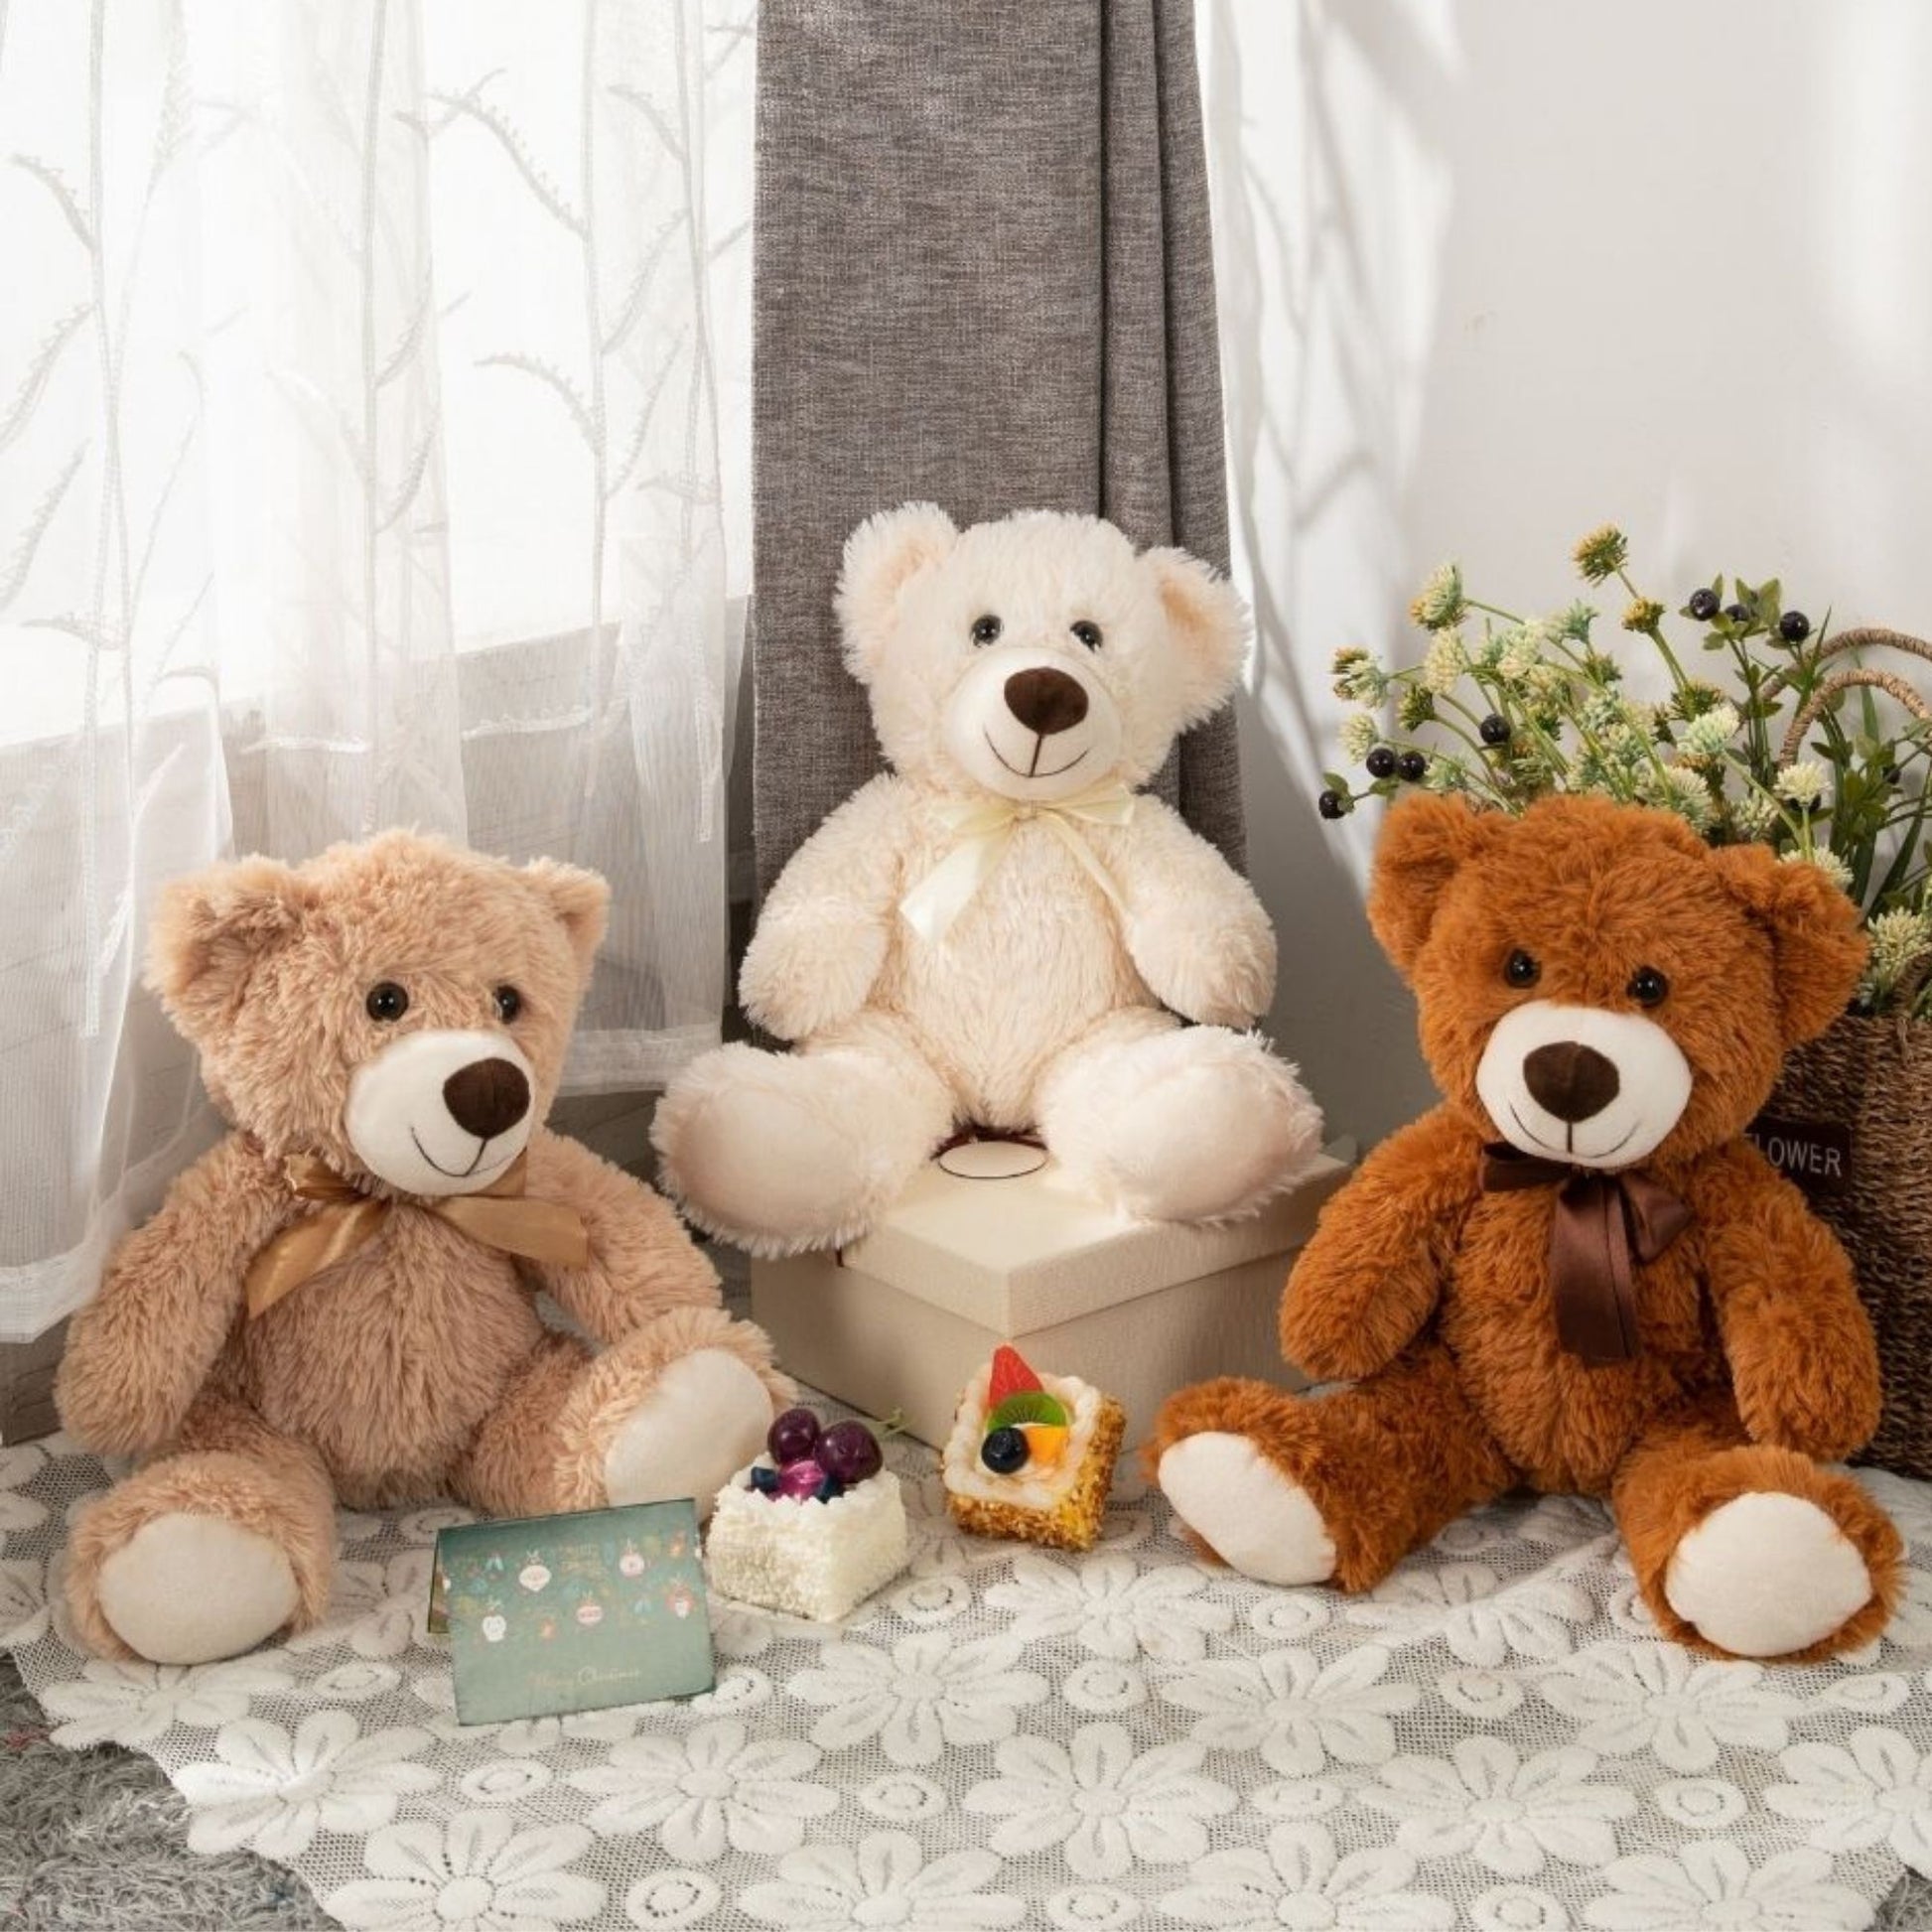 3-Pack Teddy Bears, Beige/Light Brown/Dark Brown, 13.8 Inches